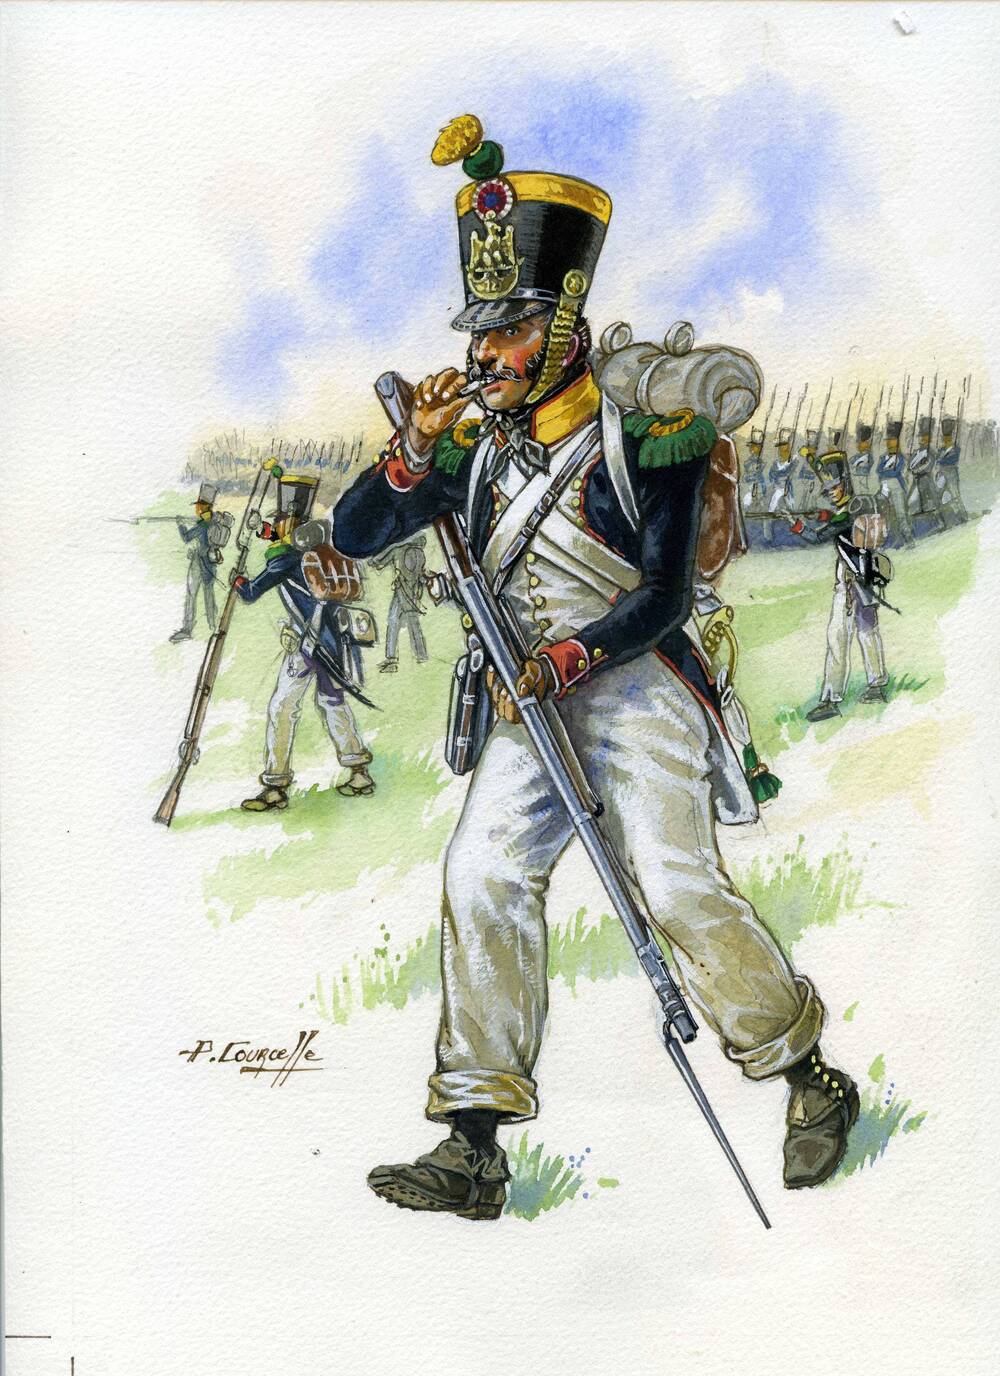 Графическая работа. Вольтижер 12-го линейного полка французской армии. 1812г.